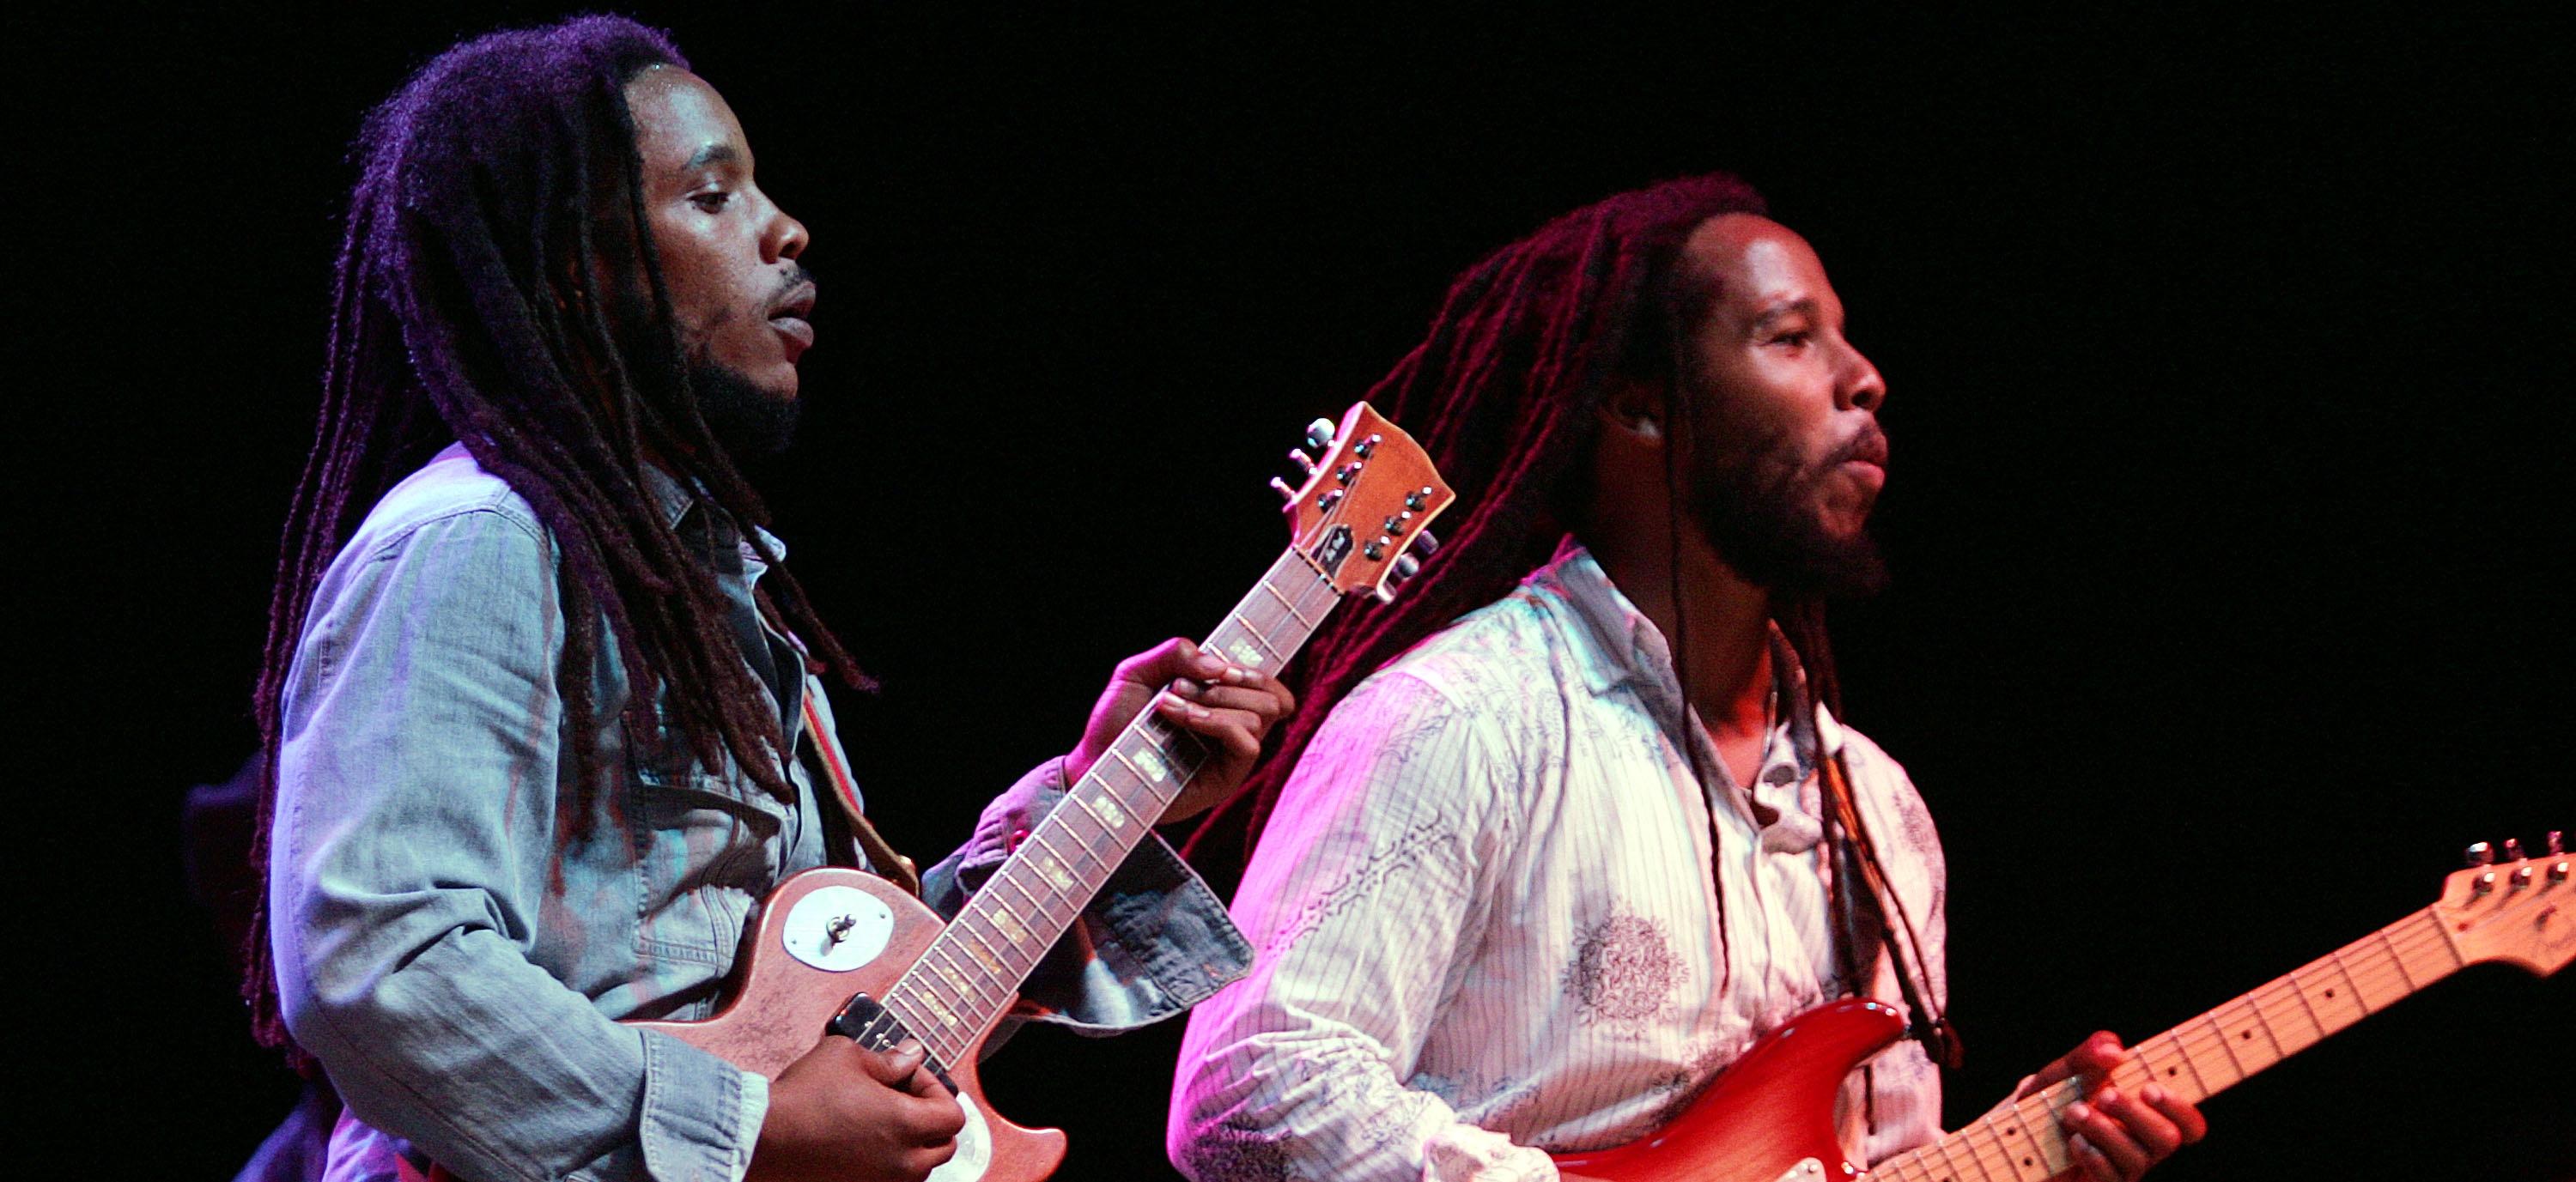 Stephen Marley (L) e Ziggy Marley, figli di Bob Marley, si esibiscono sul palco alla prima tappa del "Roots, Rock, Reggae Tour 2004"